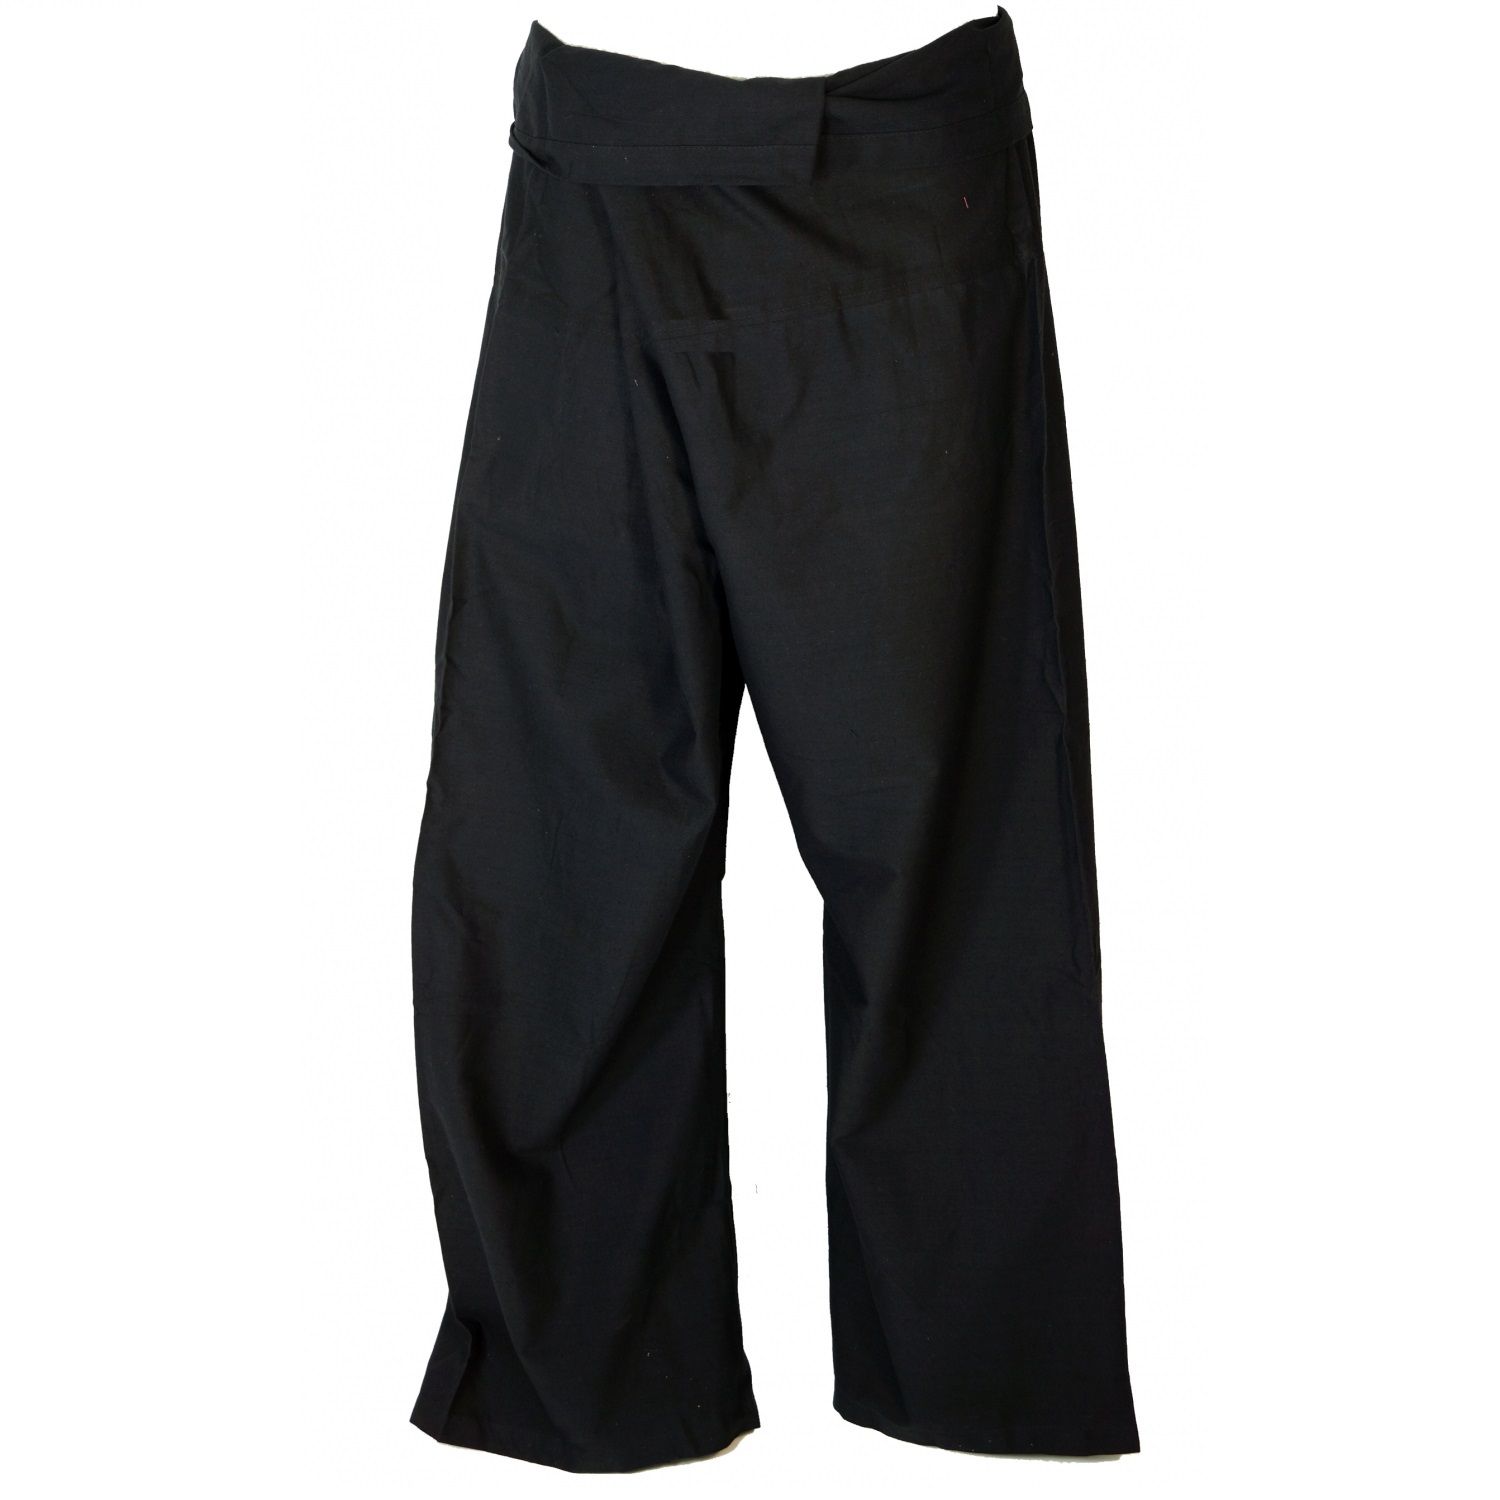 Tajskie spodnie rybaczki wykonane z mocnej bawełny, spodnie do jogi, jeden rozmiar - gładkie, czarne